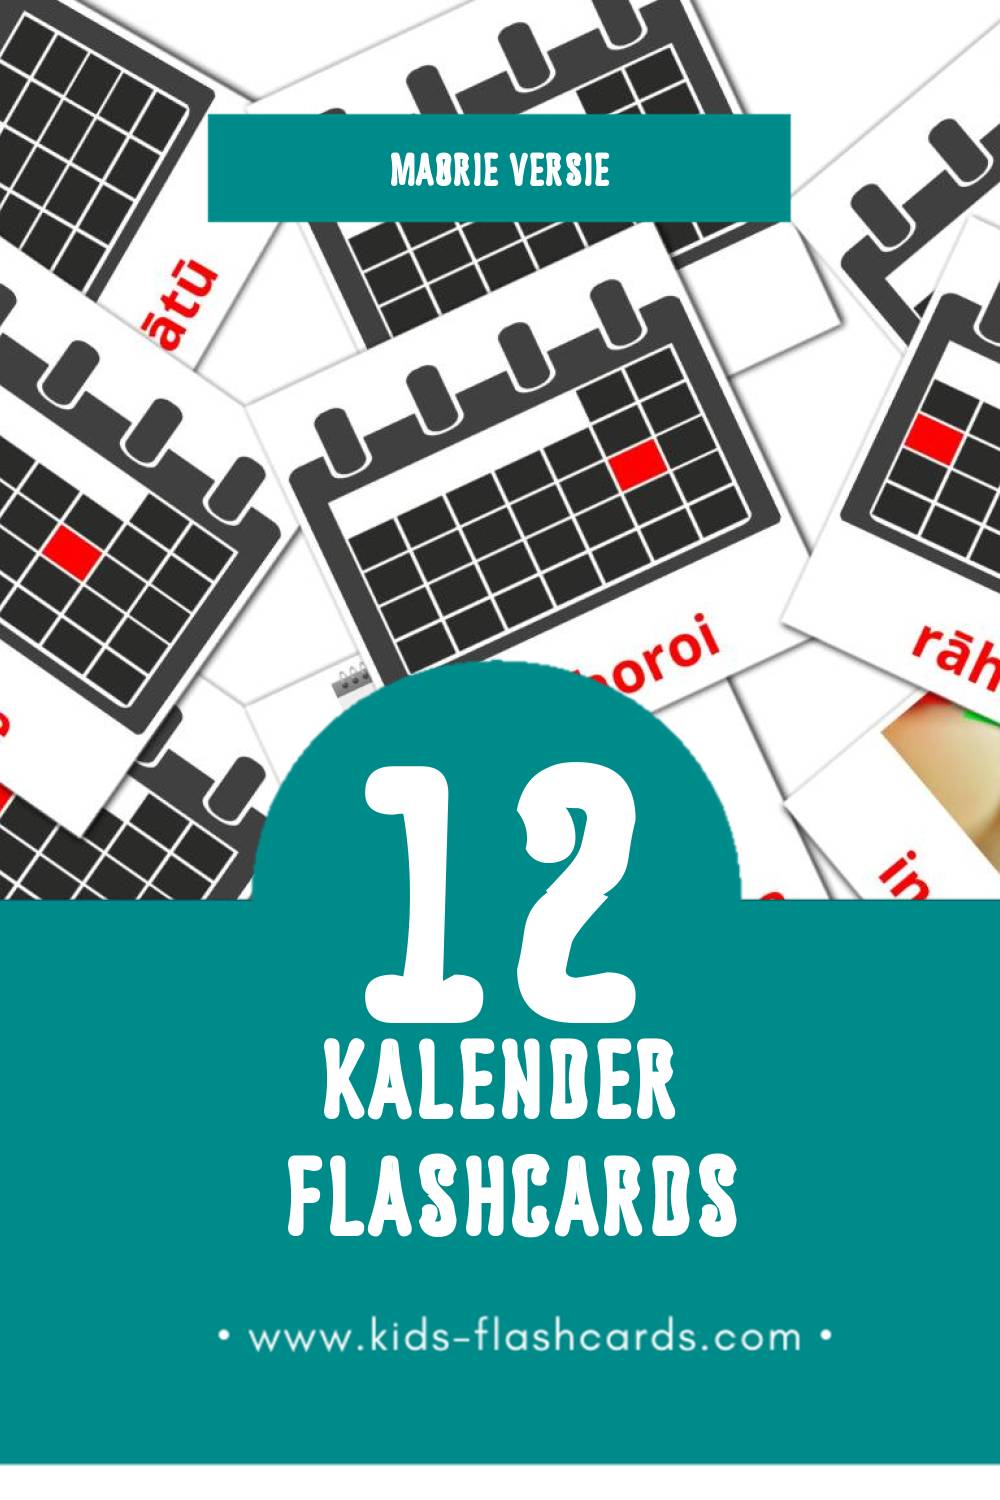 Visuele maramataka Flashcards voor Kleuters (24 kaarten in het Maori)